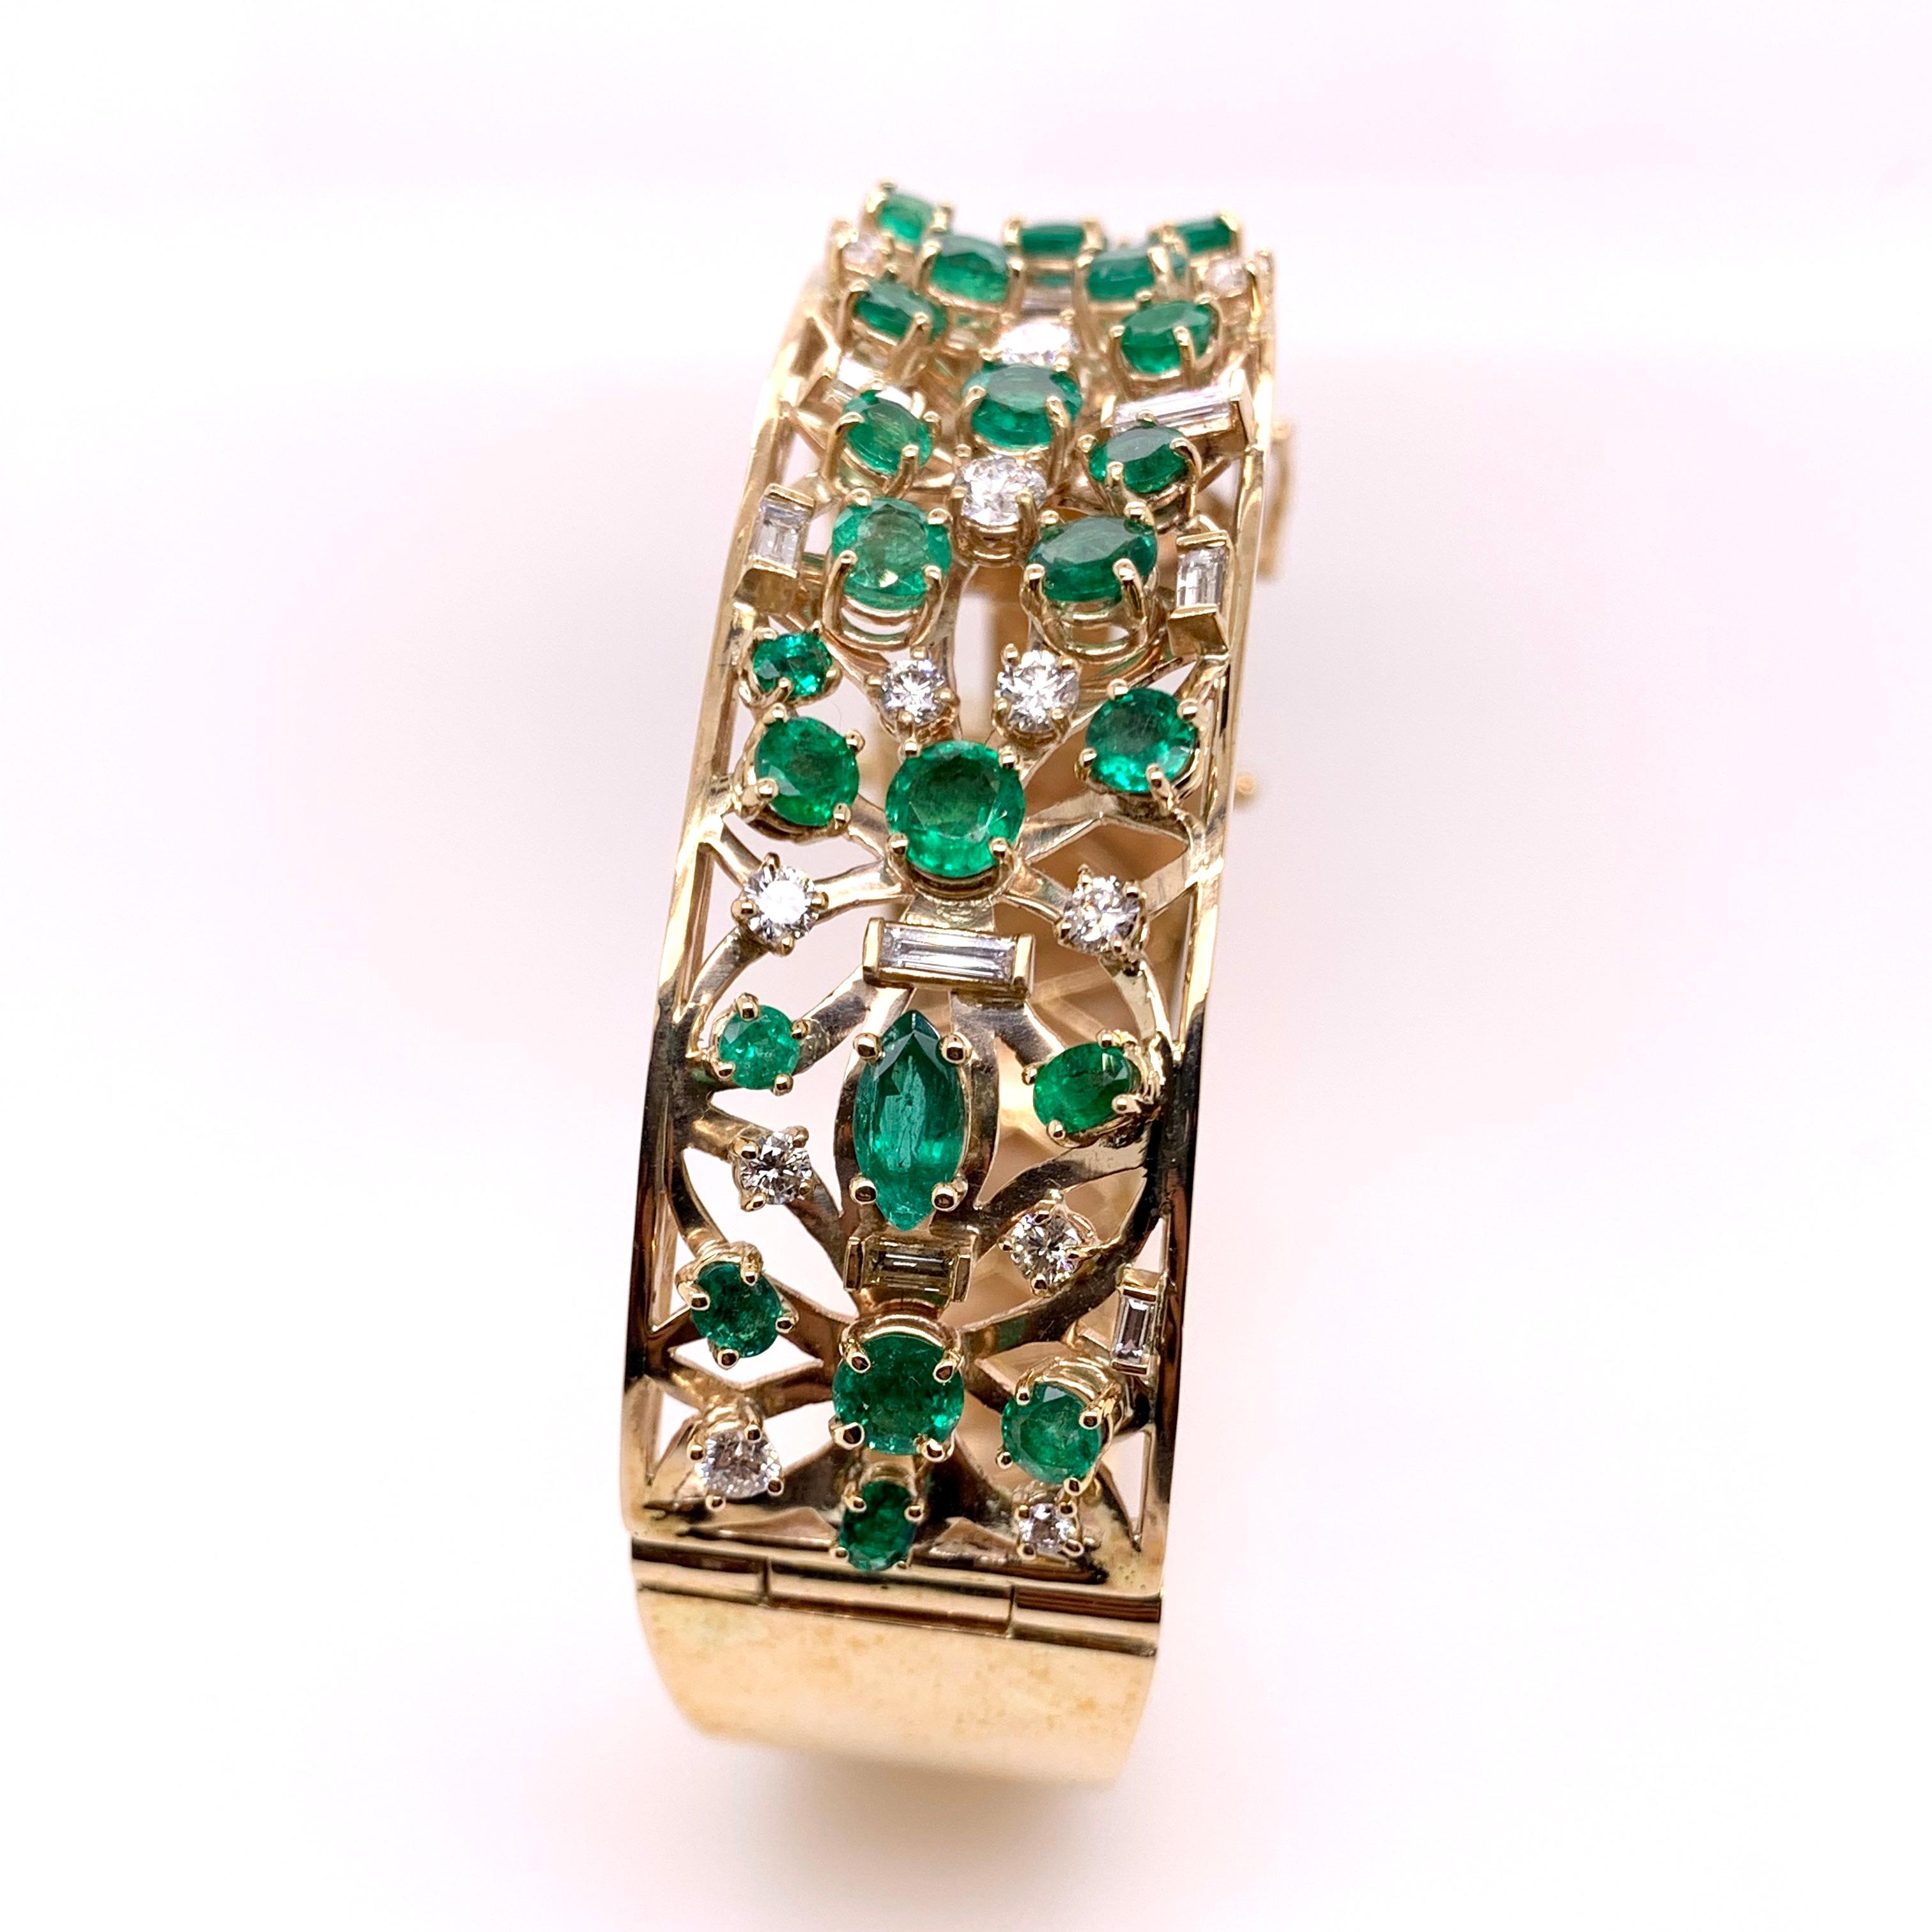 Ce magnifique bracelet asymétrique en émeraudes et diamants attirera beaucoup d'attention et les gens seront verts de jalousie devant vos émeraudes !  Cette mosaïque unique fabriquée à la main est une œuvre d'art pour votre poignet, avec son